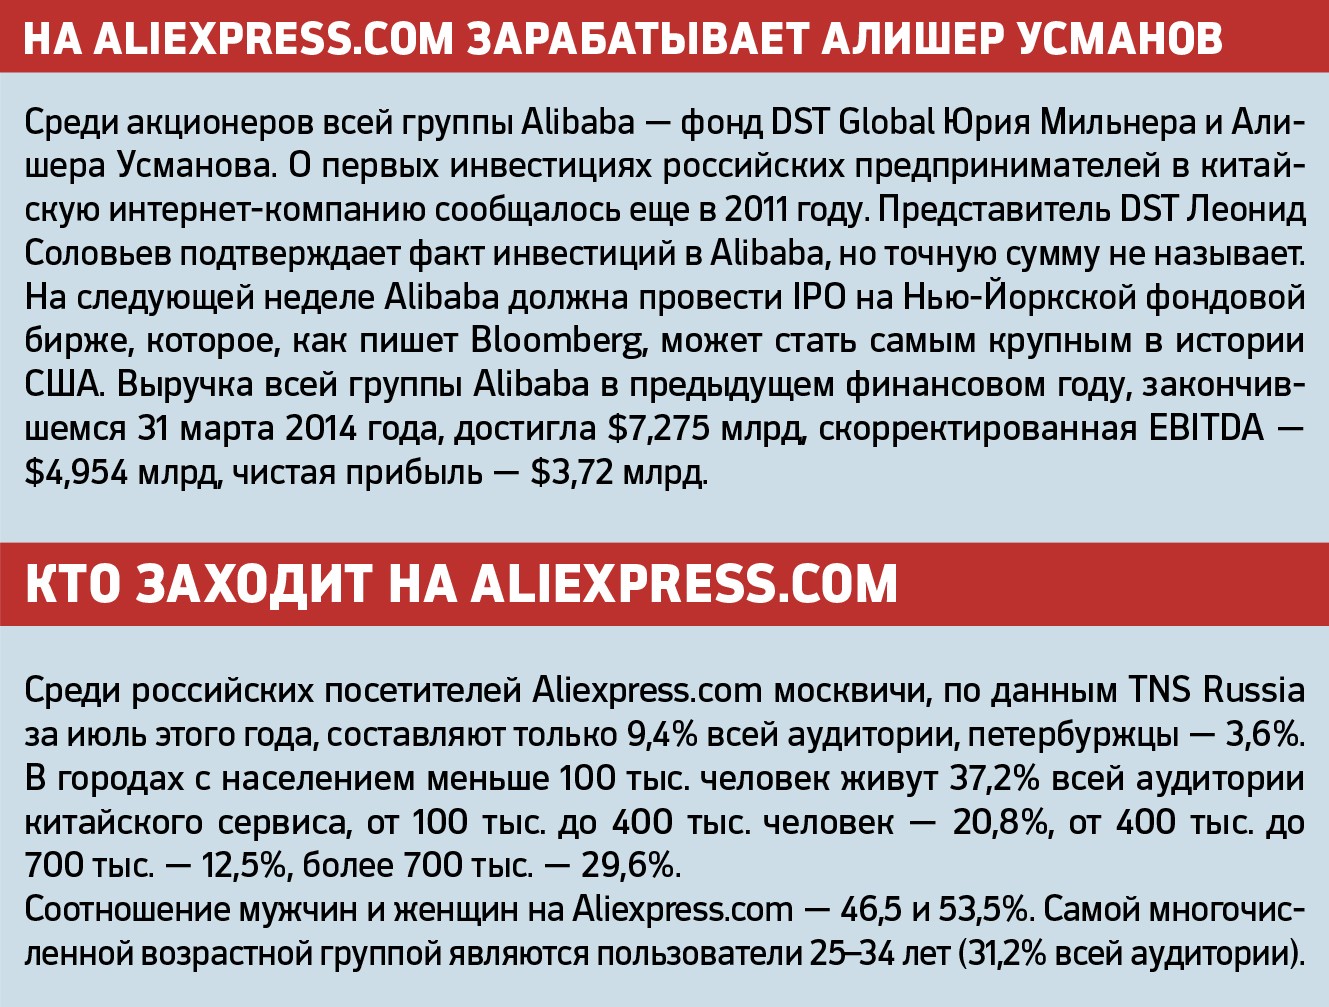 Китайский интернет-магазин попал в десятку крупнейших сайтов Рунета